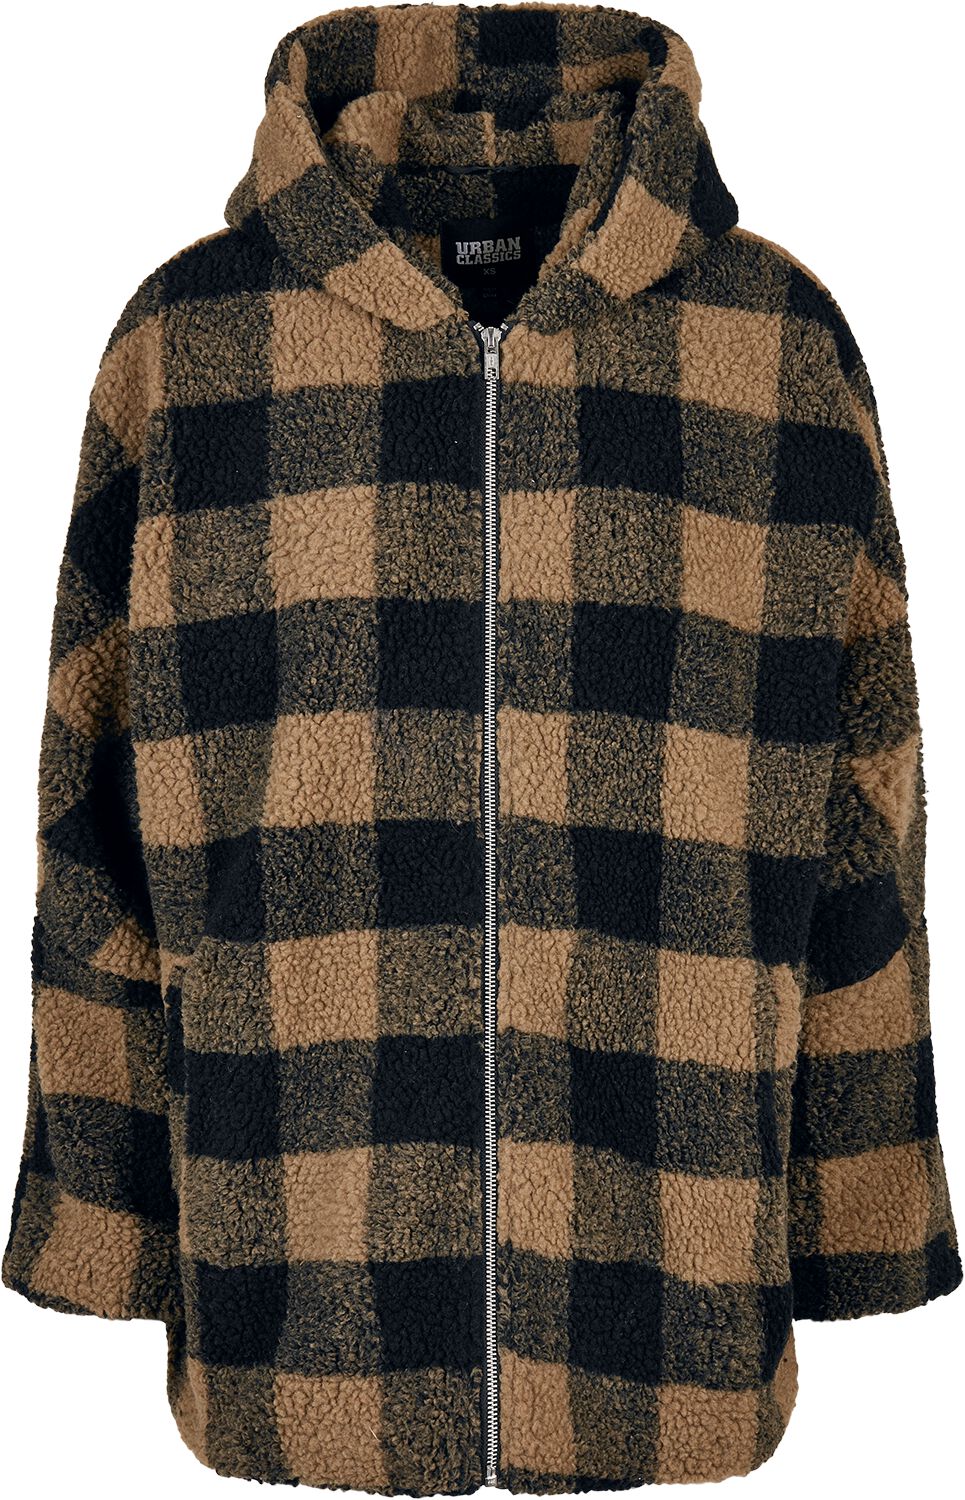 Urban Classics Übergangsjacke - Ladies Hooded Oversized Check Sherpa Jacket - XS bis S - für Damen - Größe XS - braun